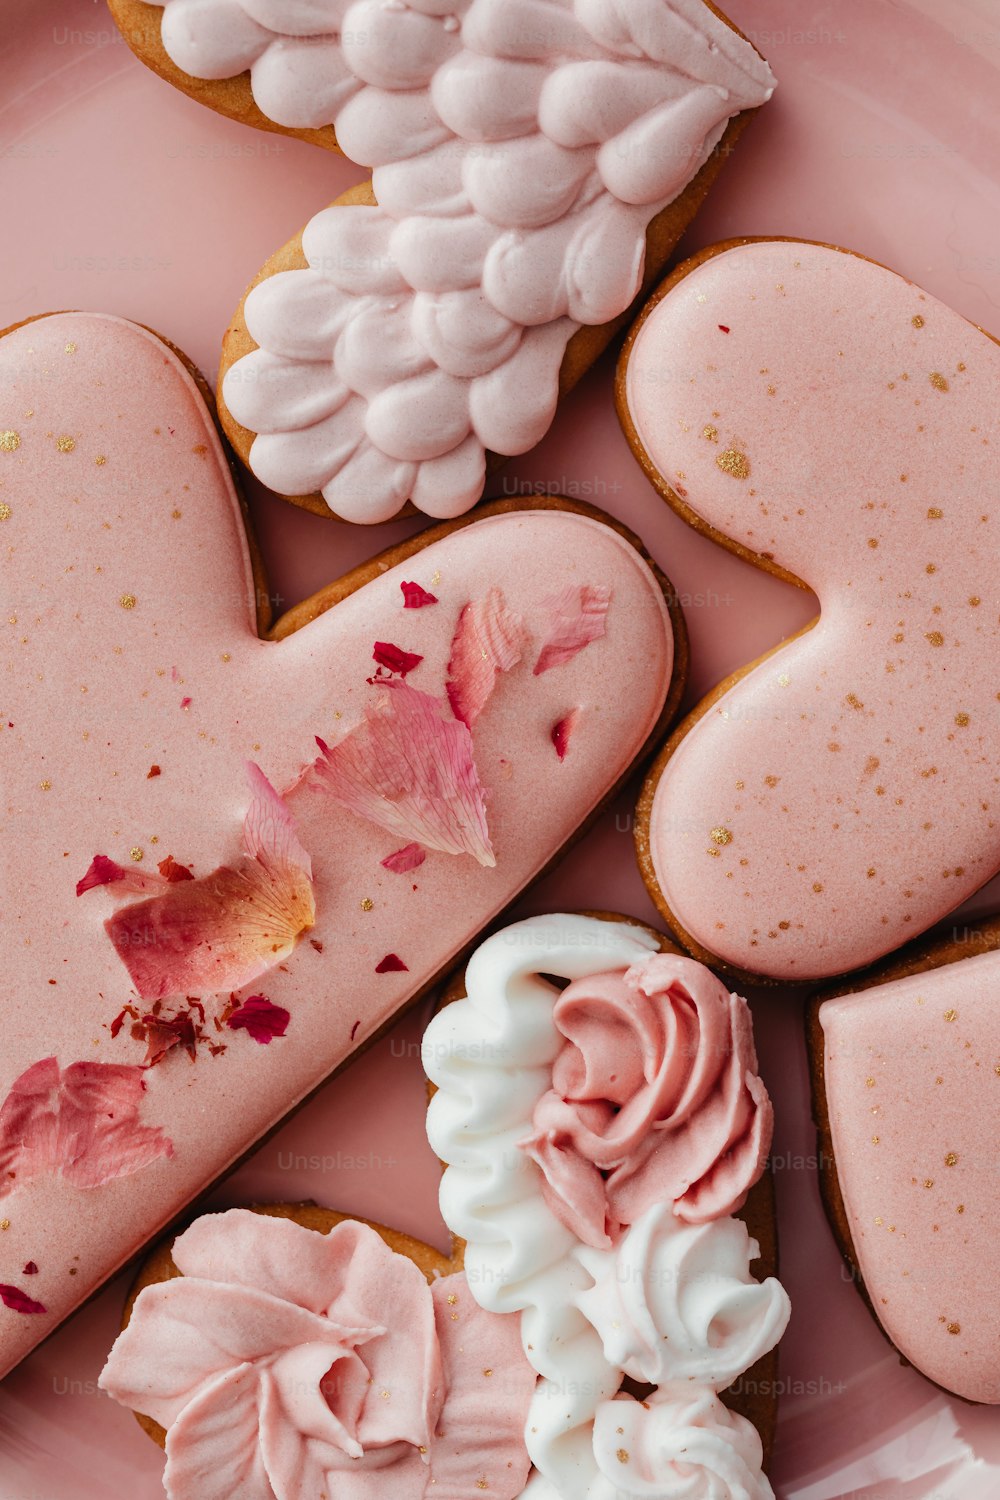 un piatto rosa sormontato da biscotti a forma di cuore